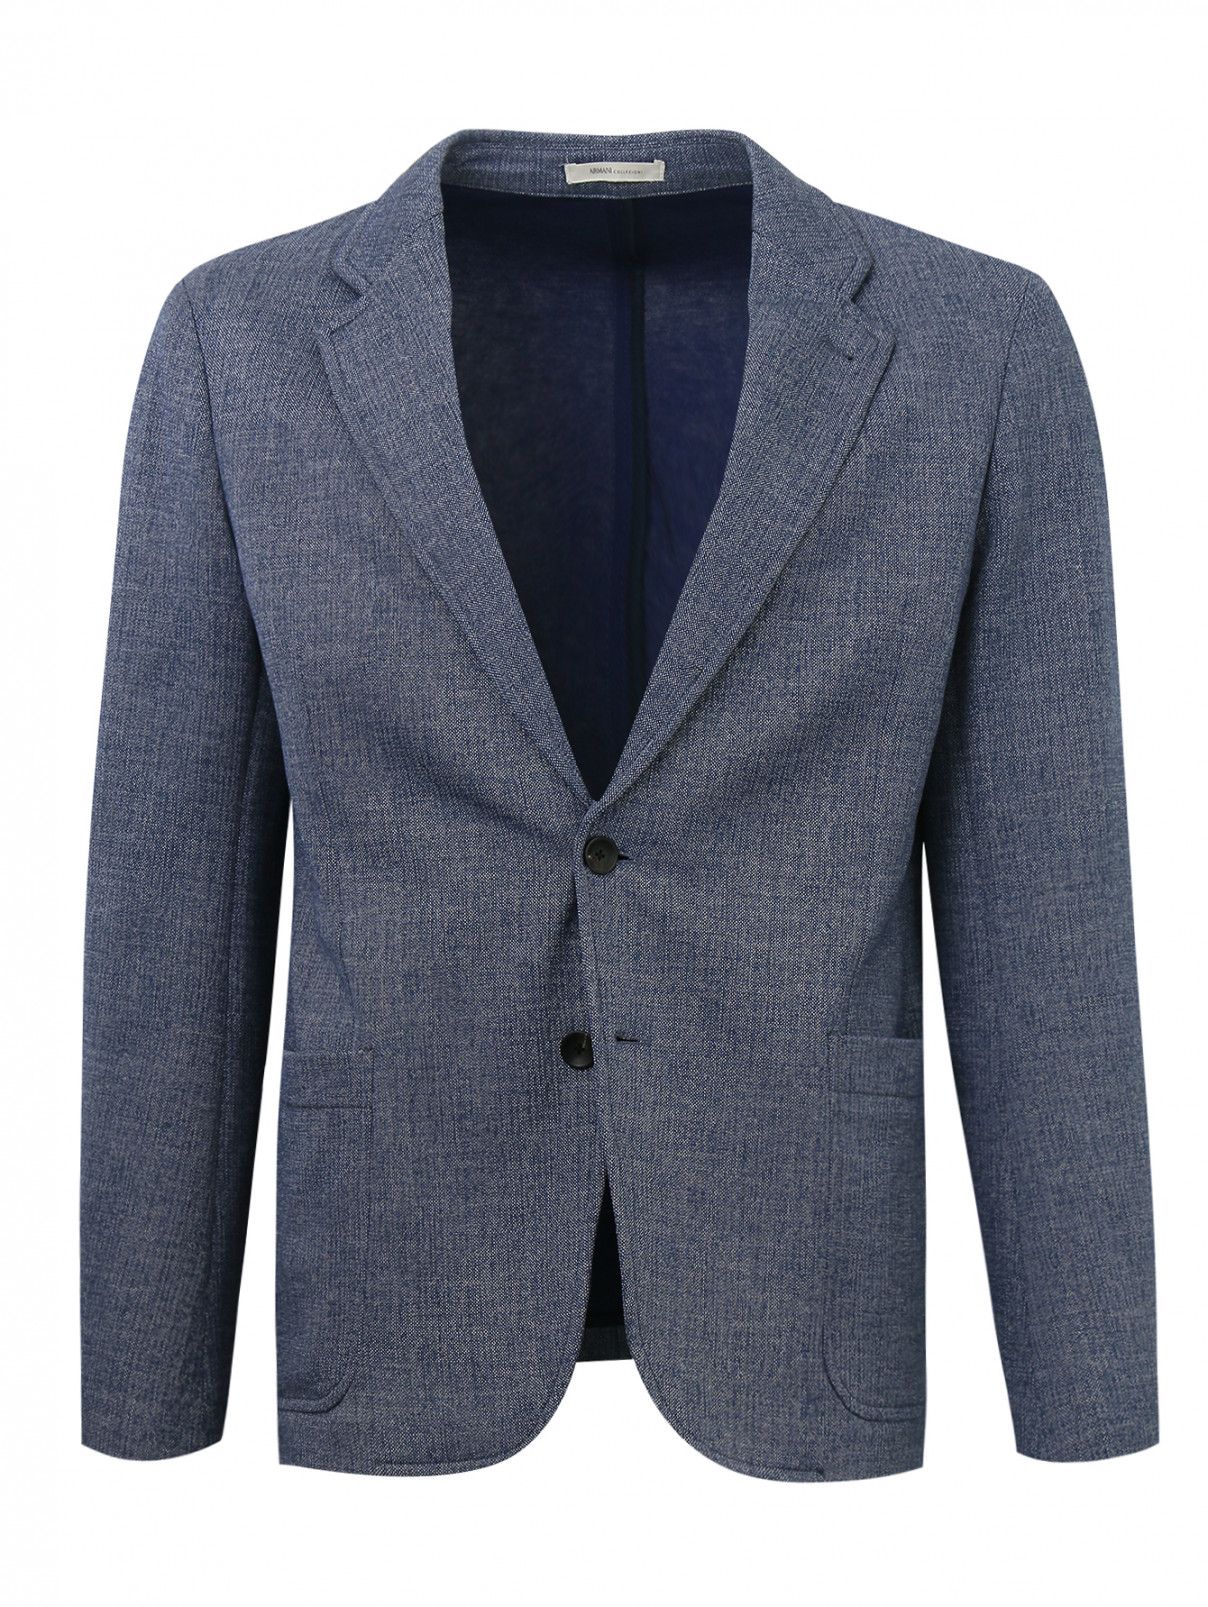 Пиджак однобортный из хлопка Armani Collezioni  –  Общий вид  – Цвет:  Синий